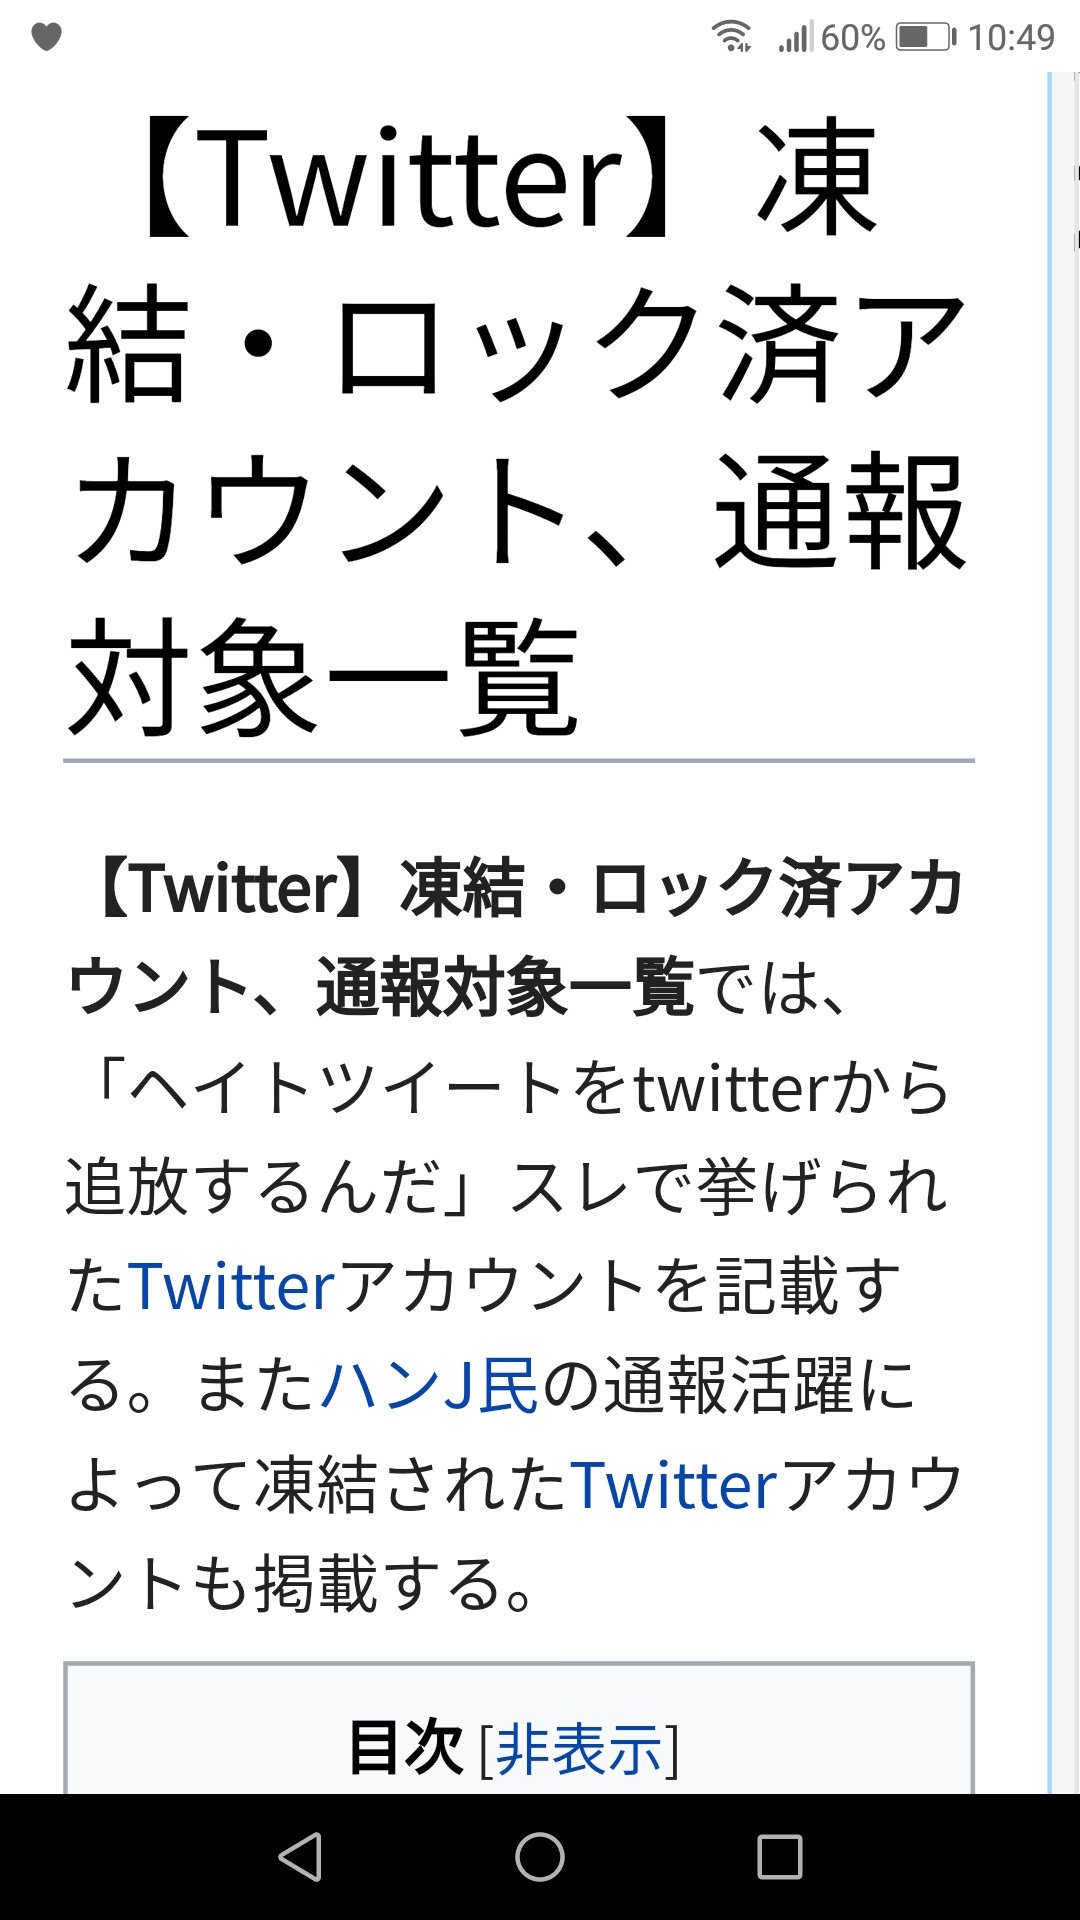 Kazunori ポリコレ滅殺さんのツイート ネトウヨ通報リストだそうです これは ネトウヨ冬のban祭り をやってる連中が利用する通報リストです T Co H5pdidpnpp 私も 未分類 にリストアップされてますが 何で通報されなきゃいけないんですか 何の理由